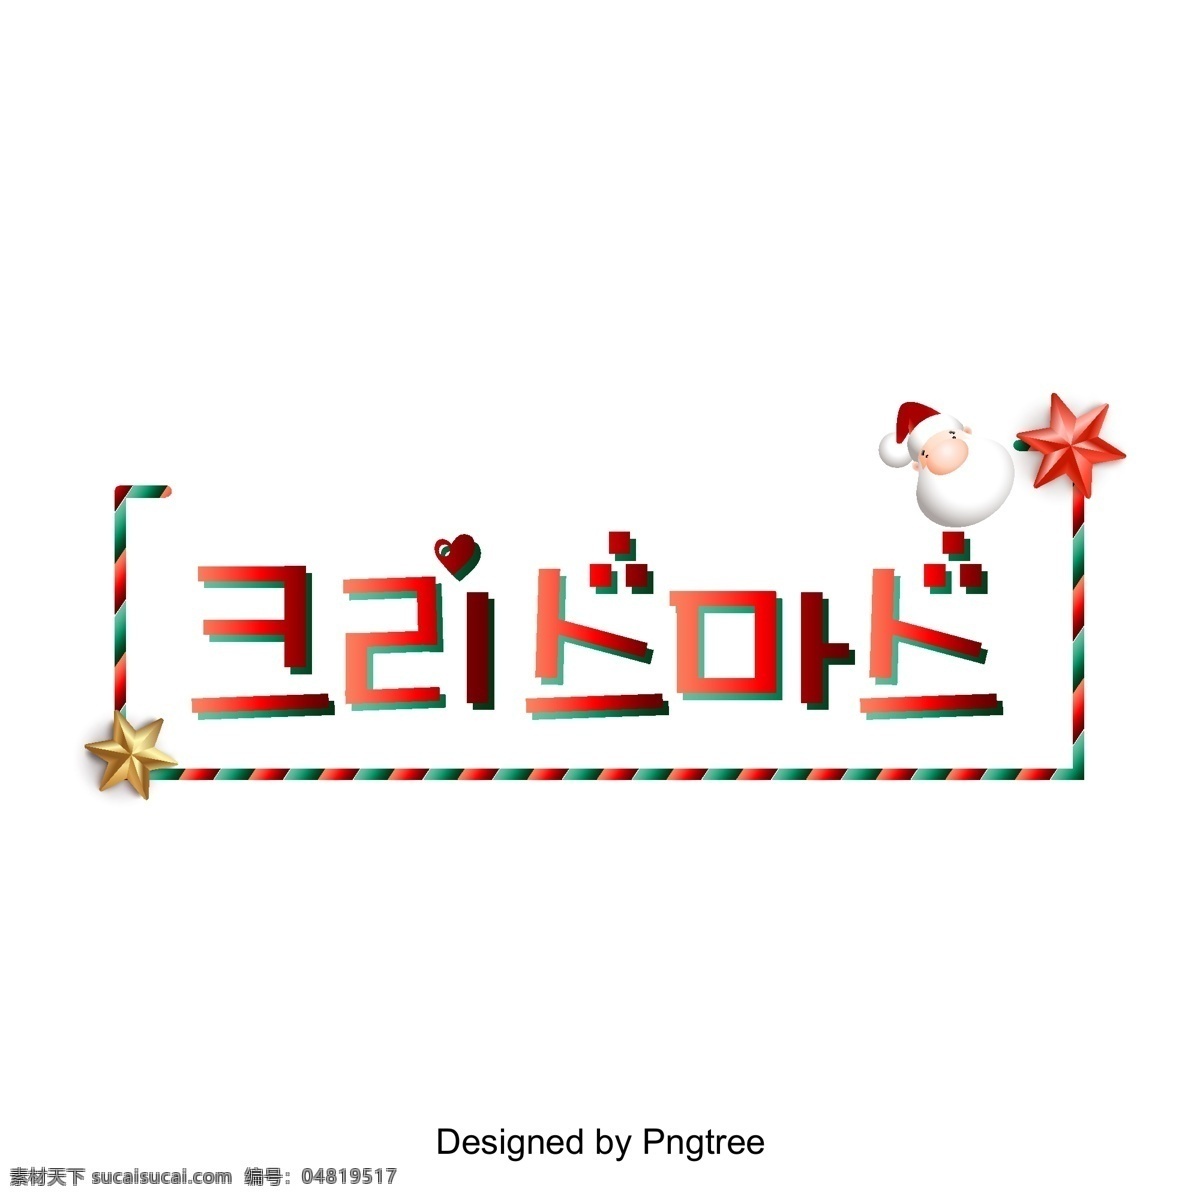 圣诞快乐 红色 蓝色 装饰 立体 场景 非常 漂亮 韩国 圣诞节快乐 红蓝 帧 可爱 圣诞老人 韩文 现场